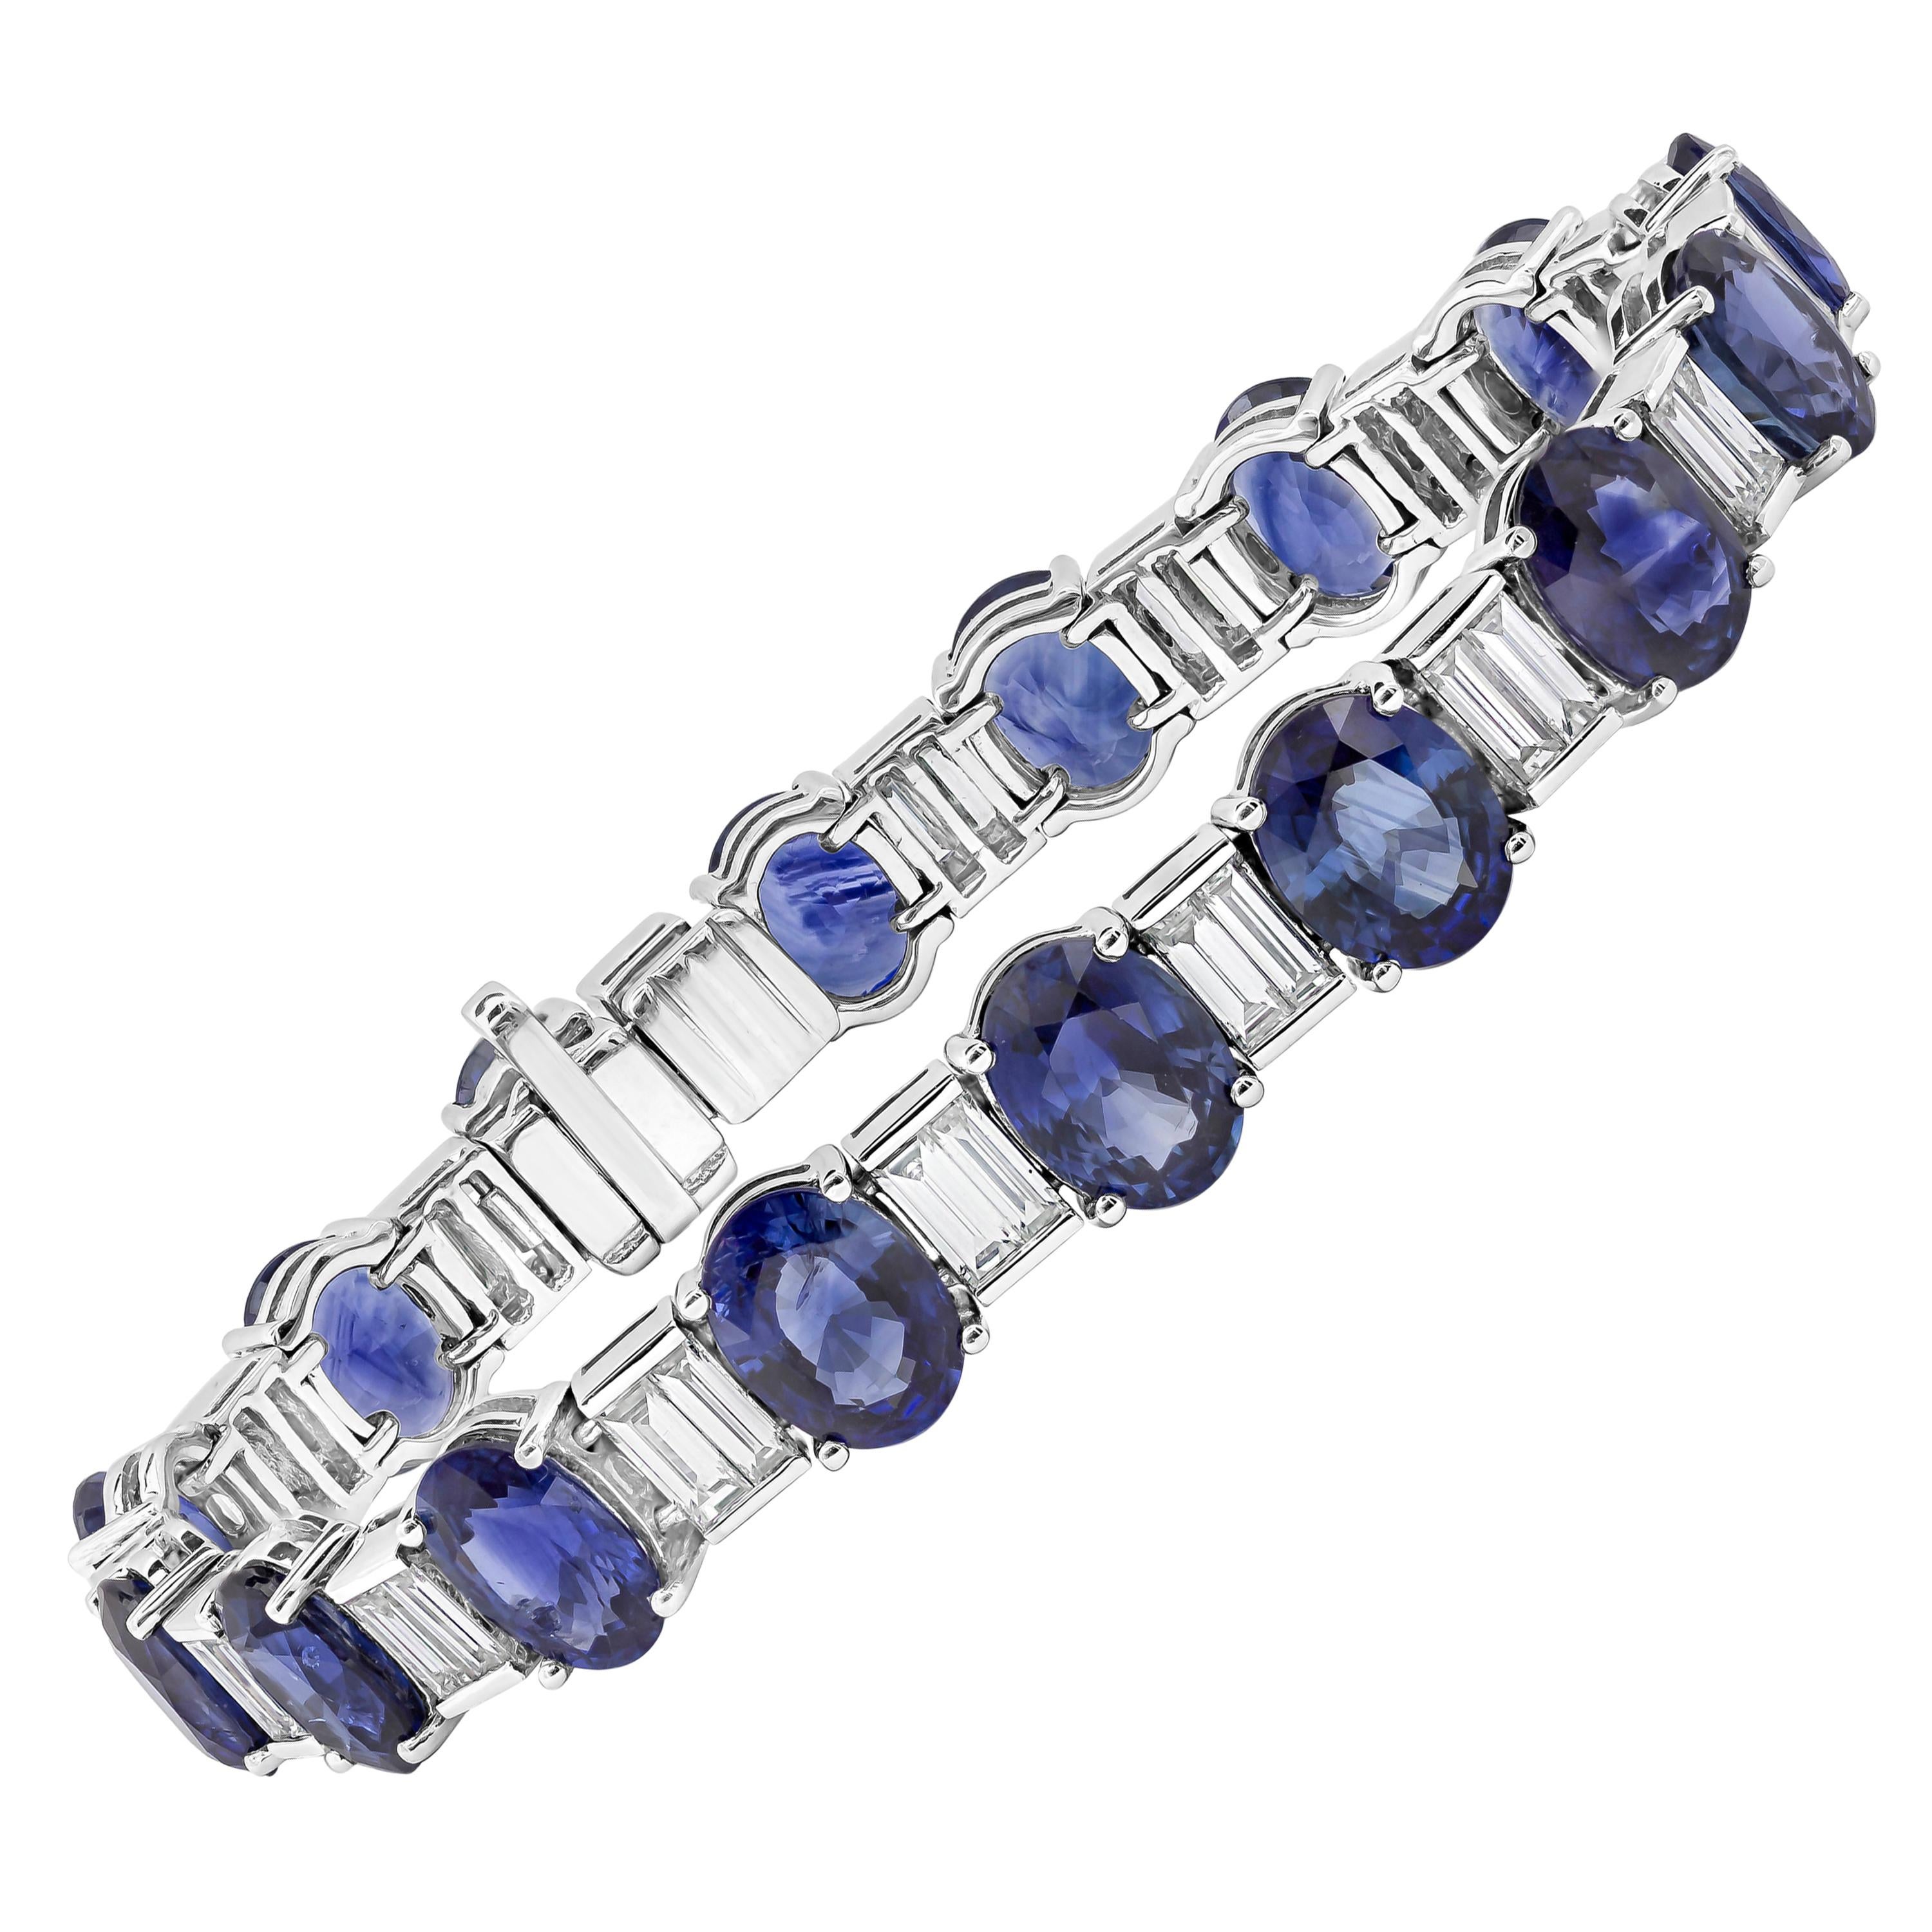 33.66 Carats Total Oval Cut Blue Sapphire & Baguette Cut Diamond Tennis Bracelet